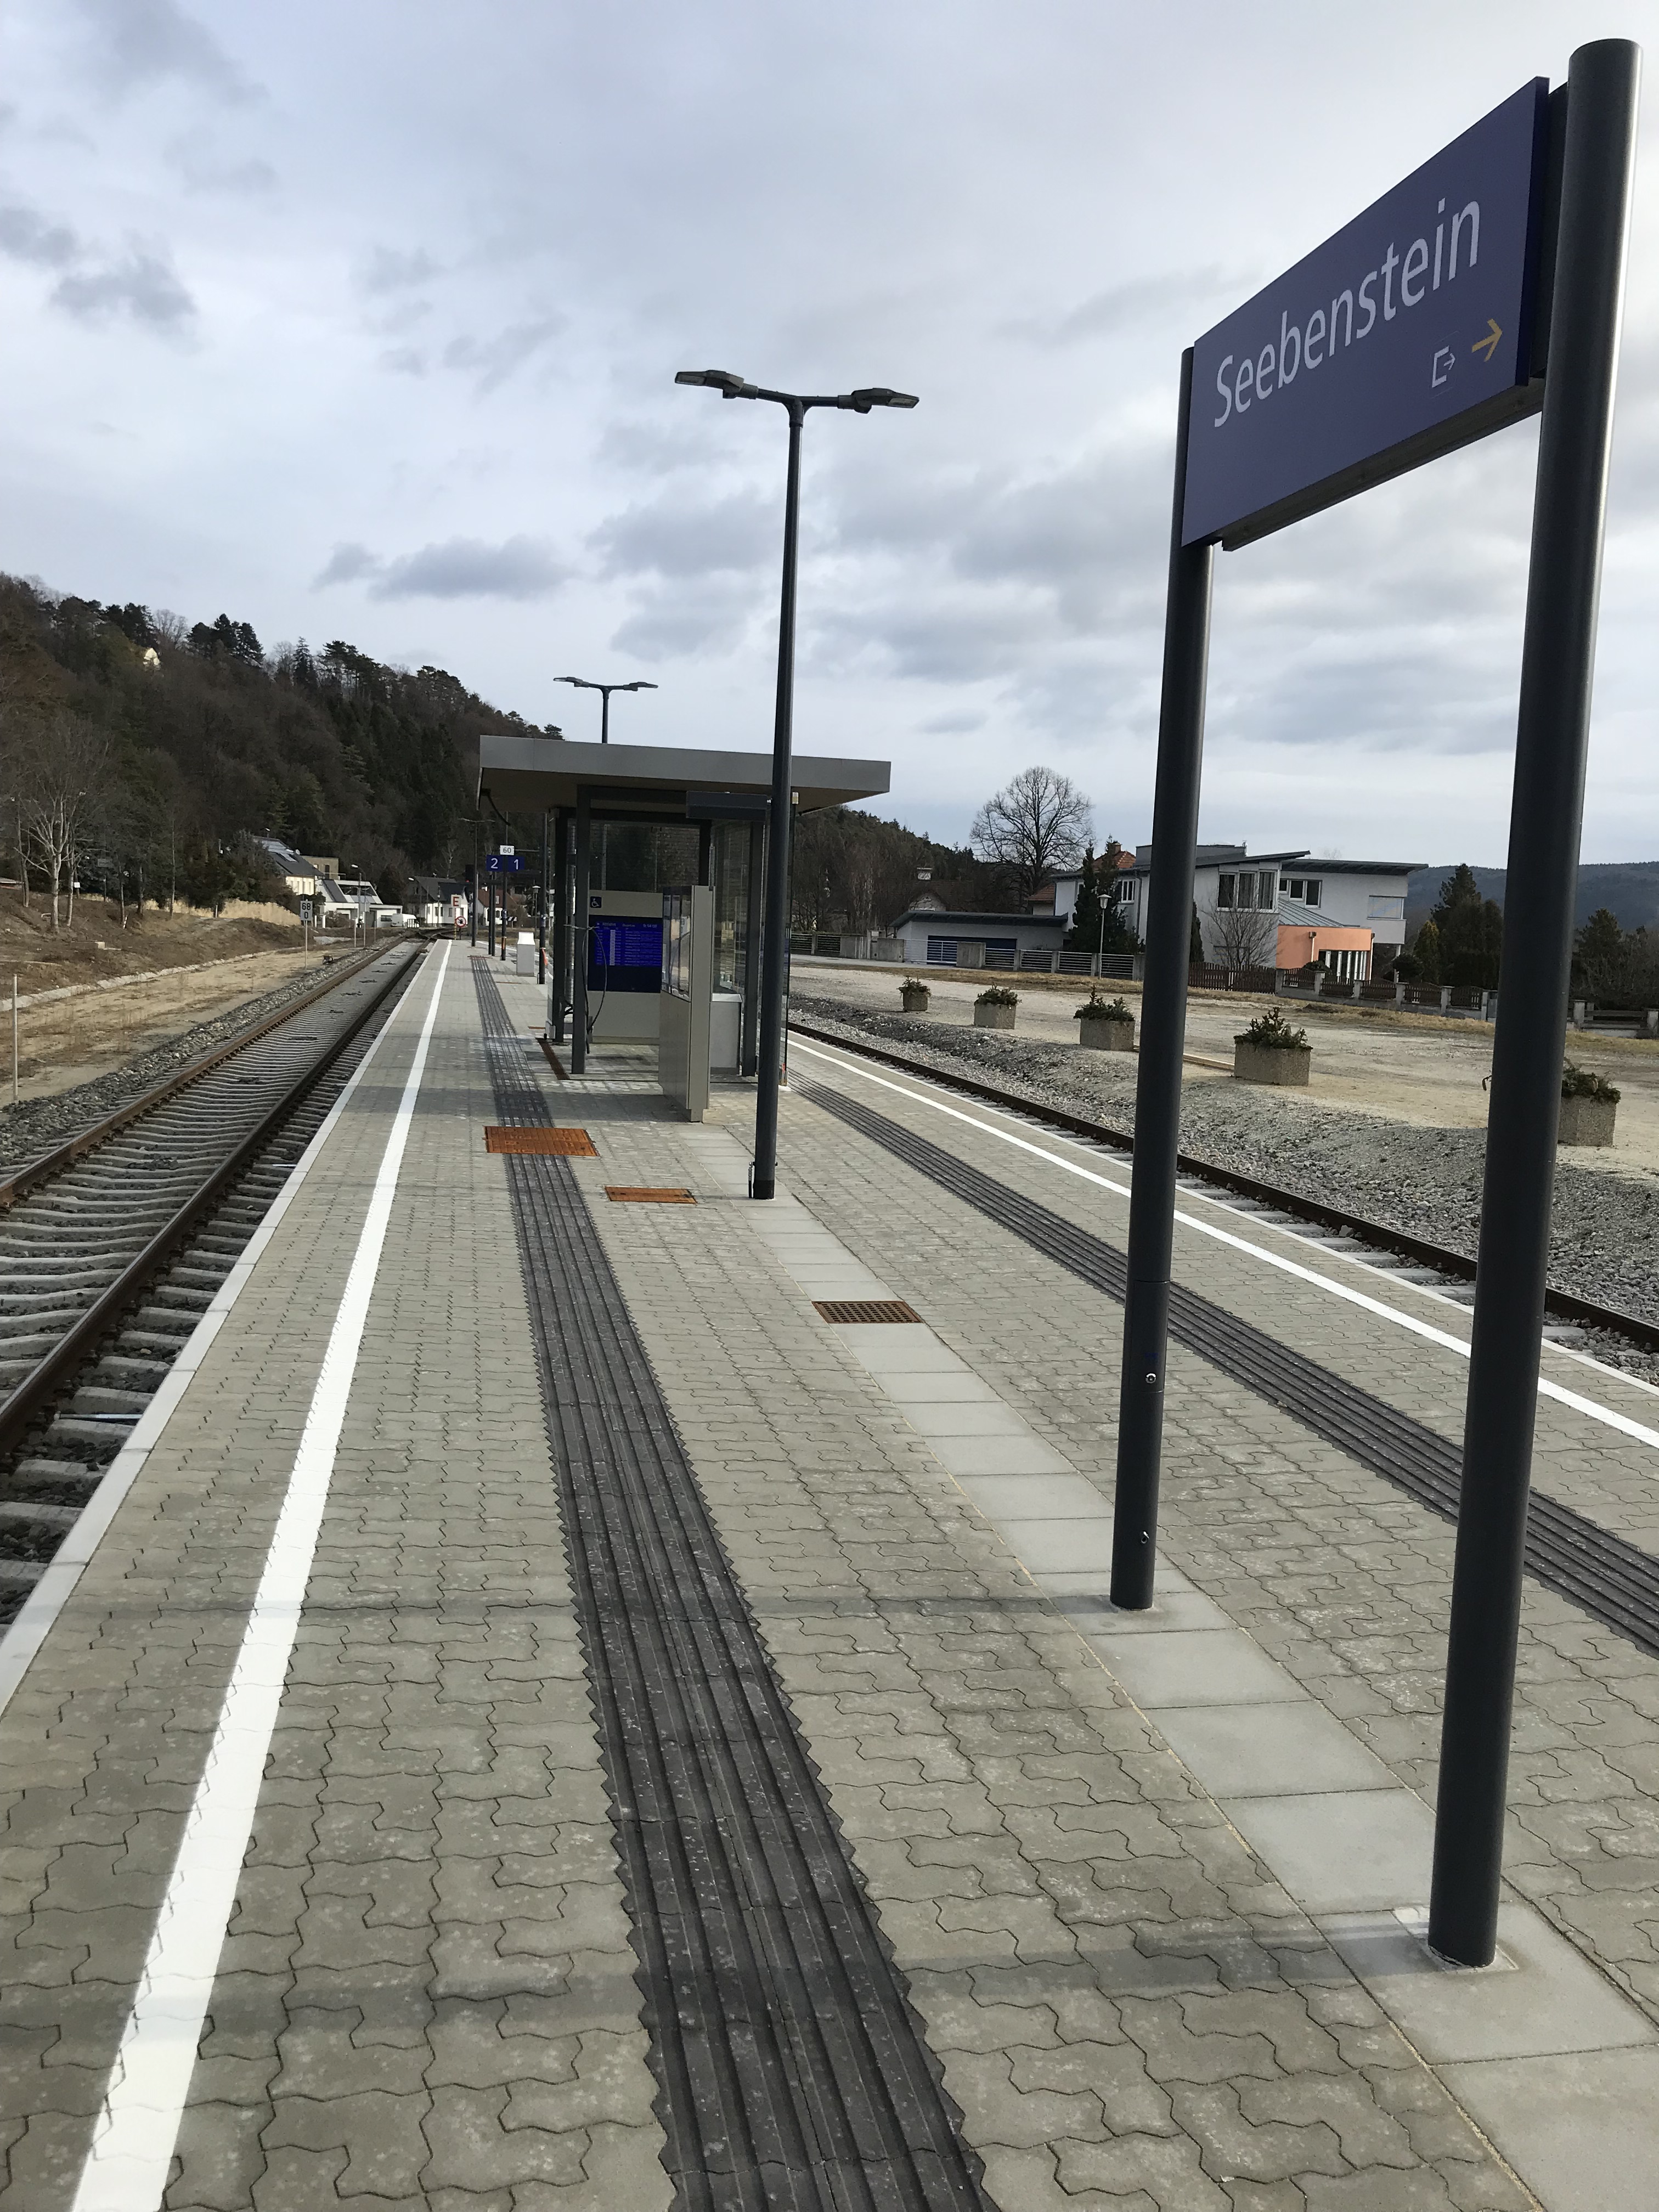 Umbau Bahnhof Seebenstein - Niskogradnja